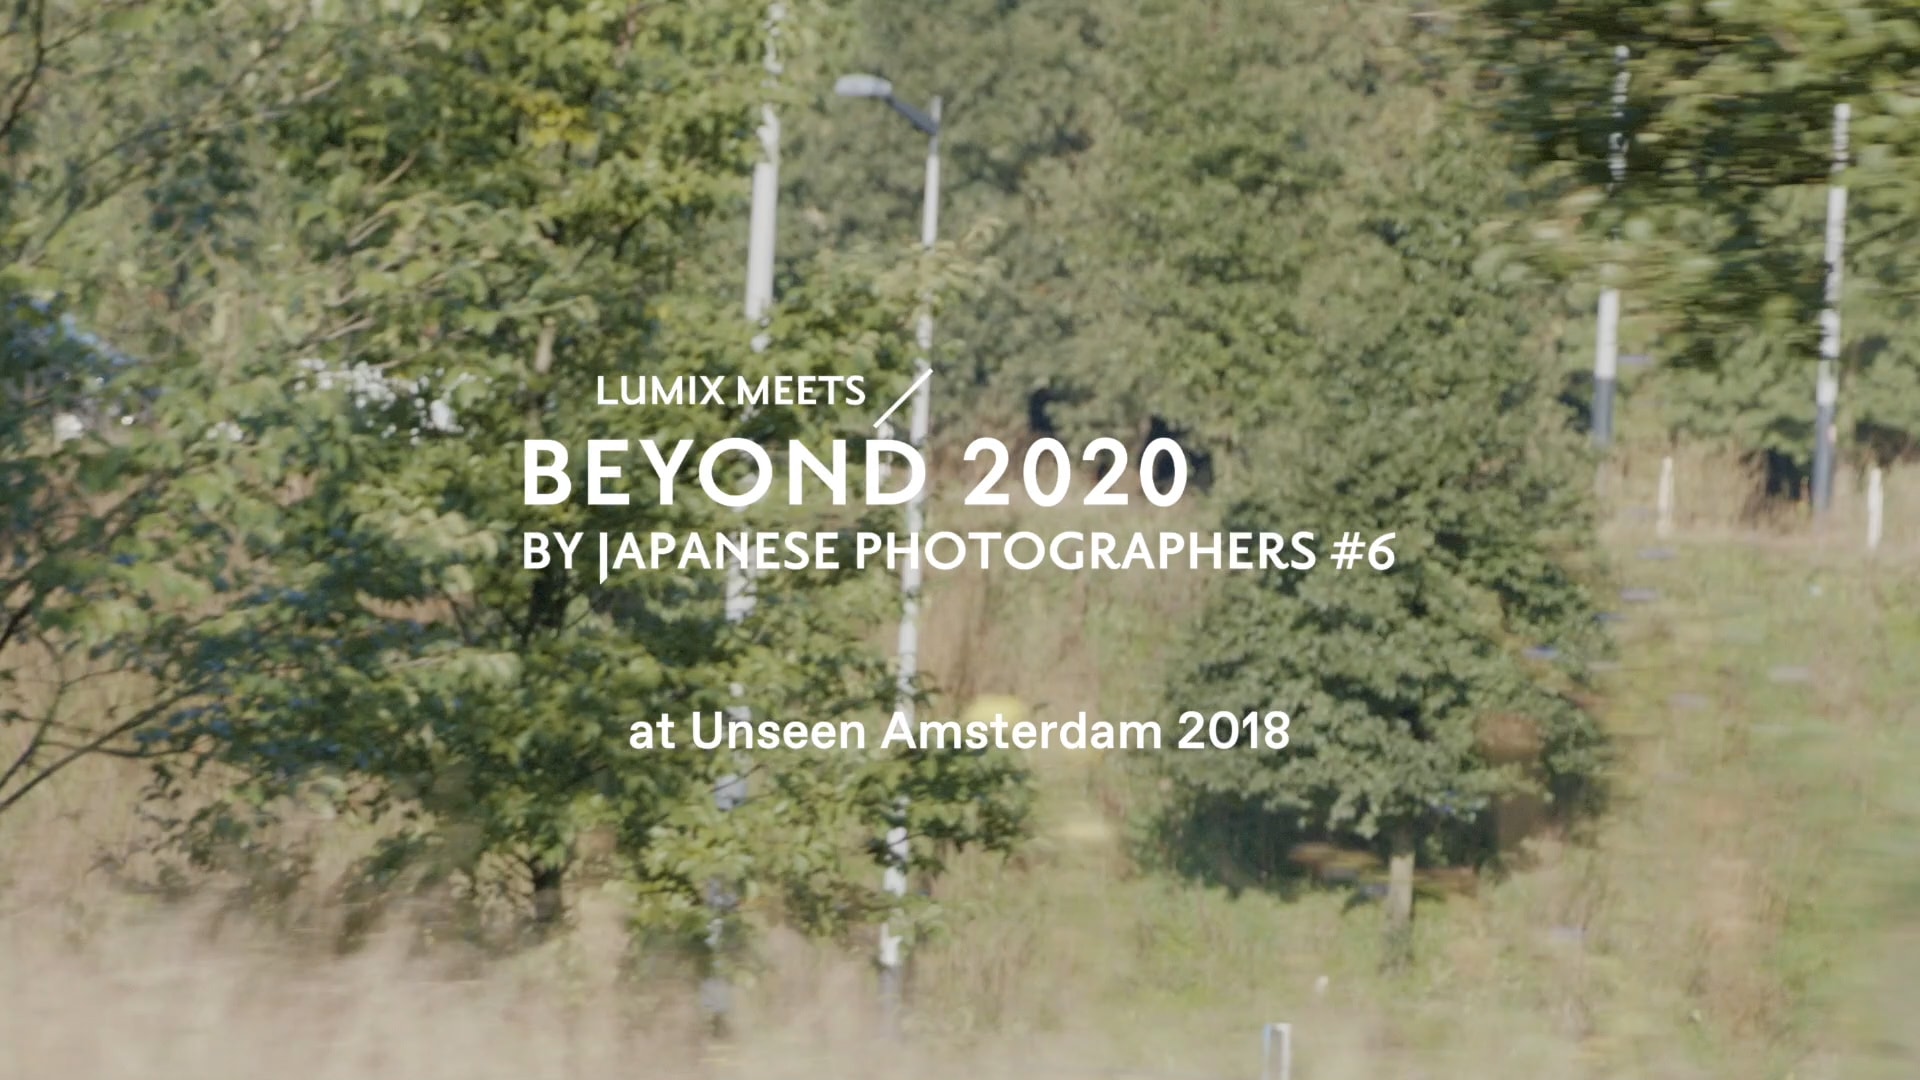 若手写真家が世界へ羽ばたく！「Beyond 2020」展のスペシャルムービー公開 | Special Movie at Unseen Amsterdam 2018